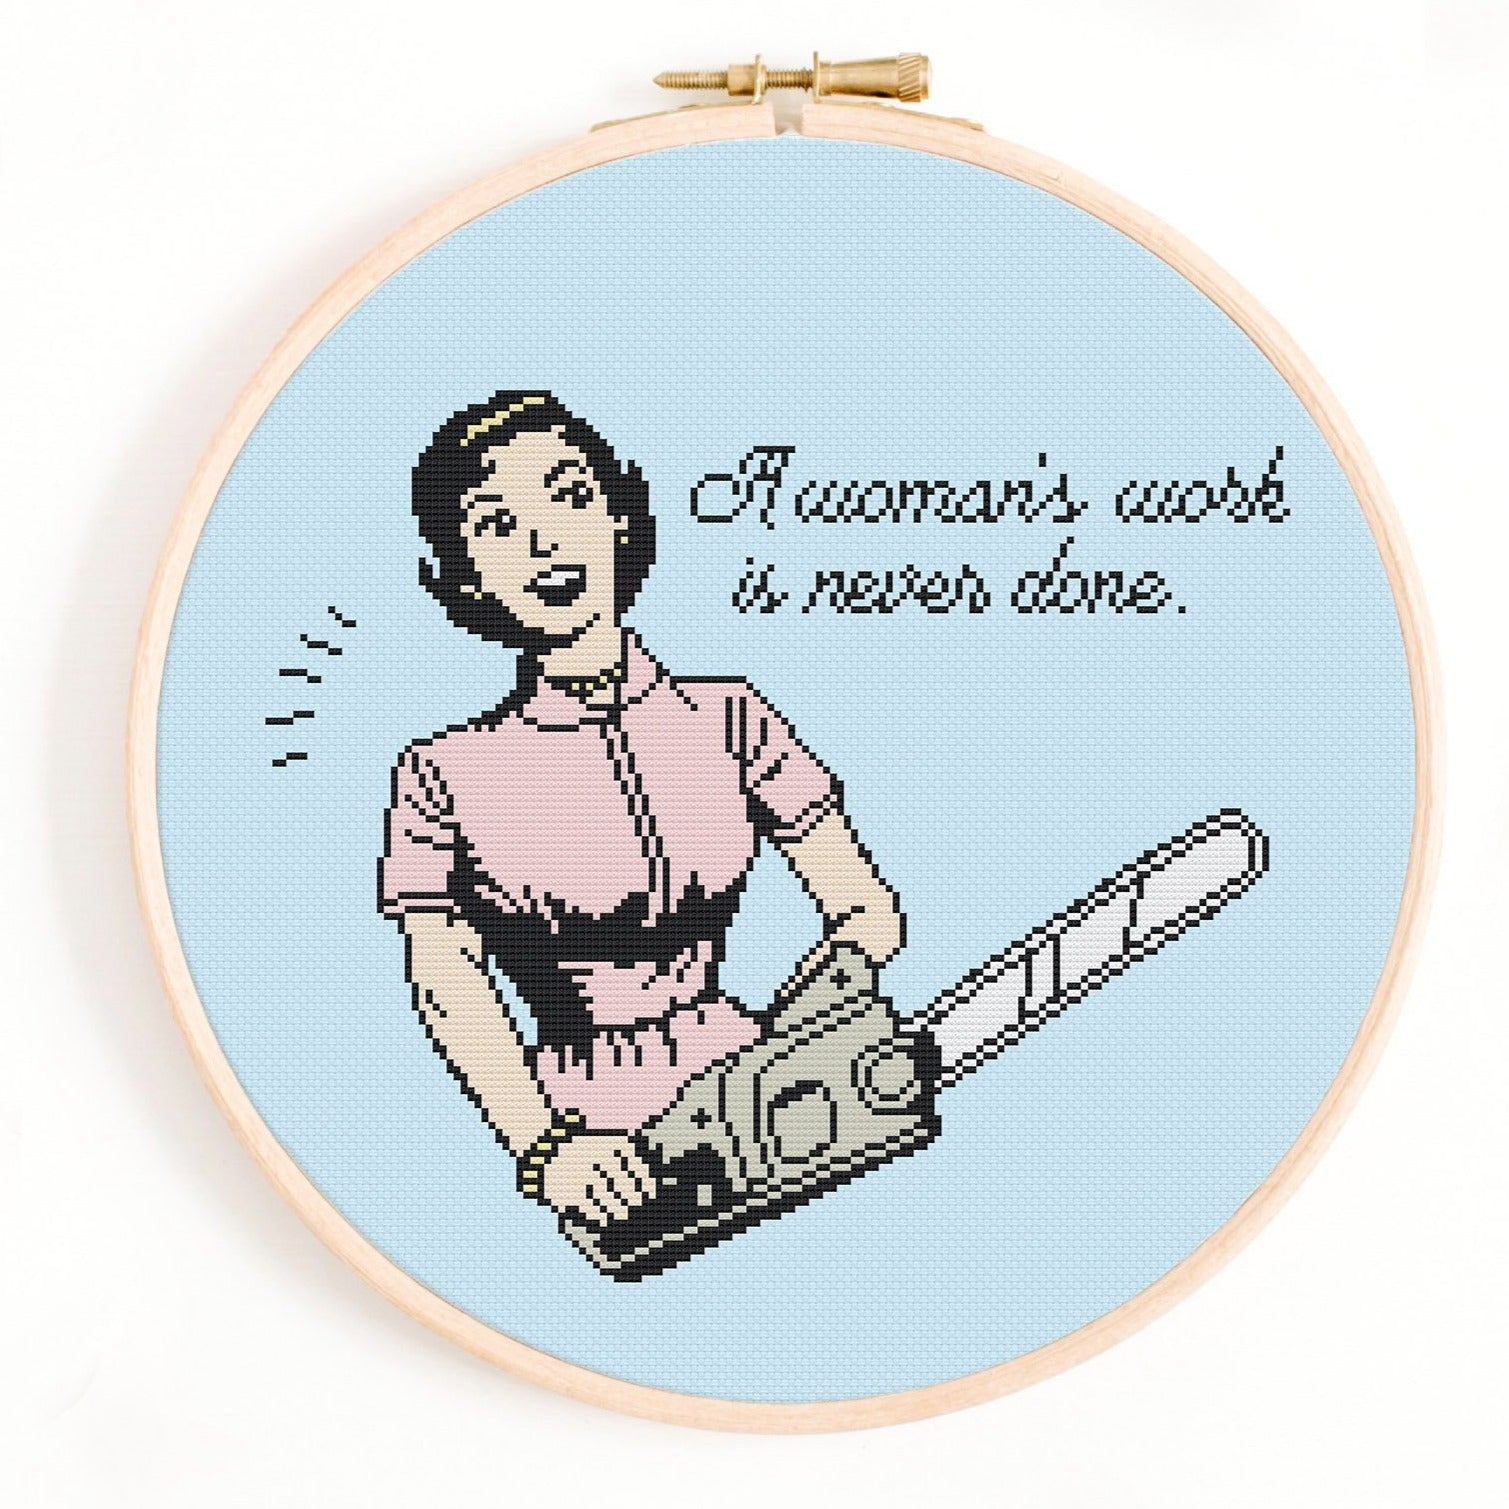 Woman's Work Cross Stitch Pattern